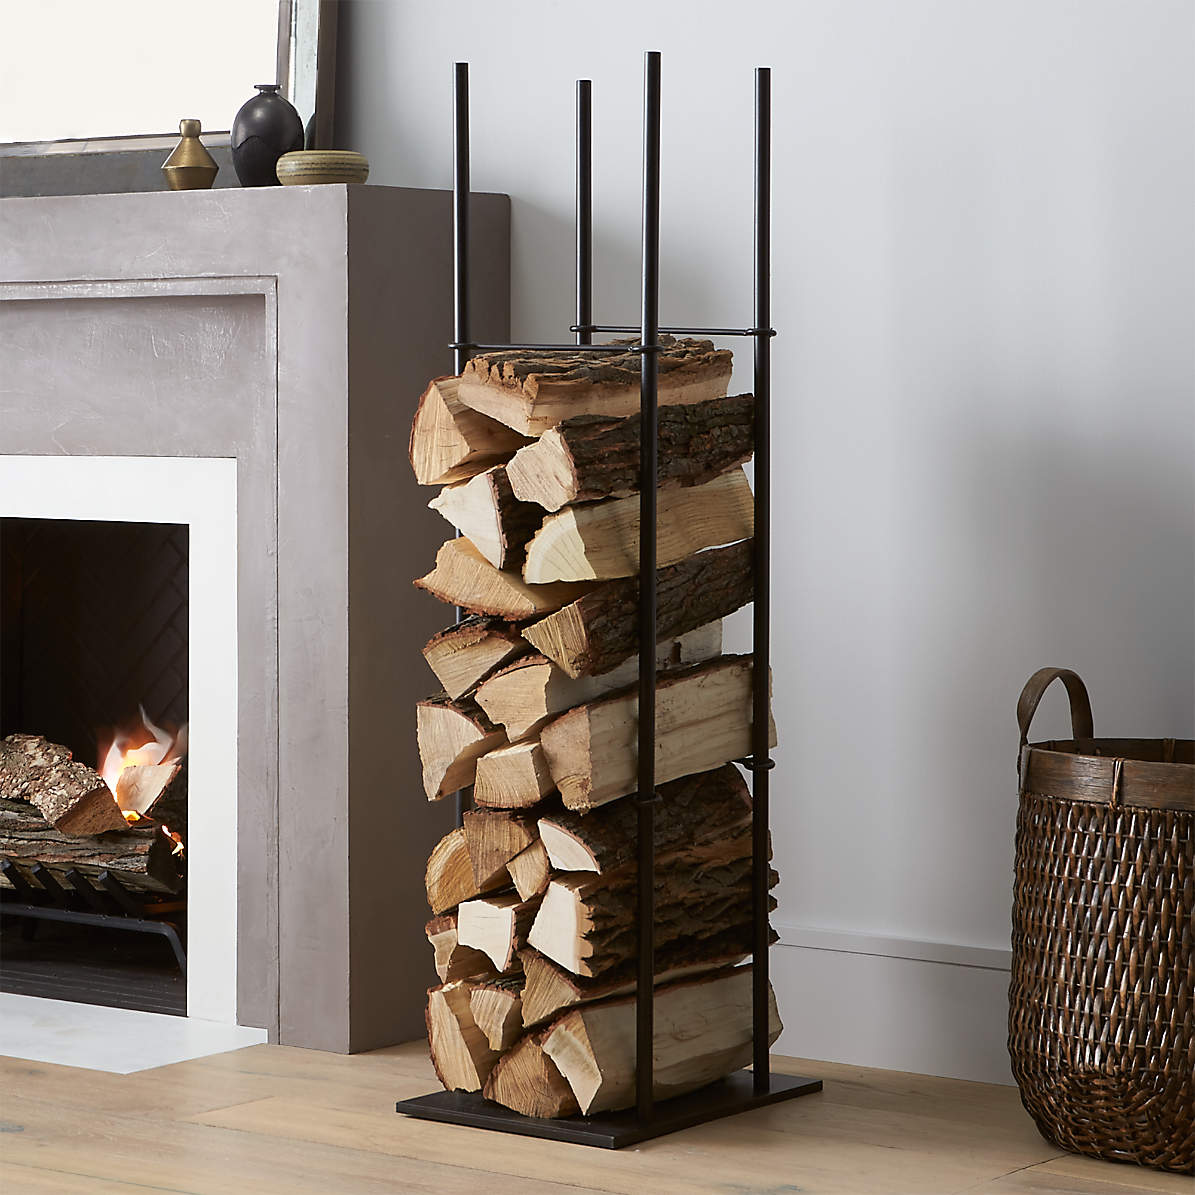 20" Indoor/Outdoor Firewood Log Rack Steel Fireplace Storage Holder